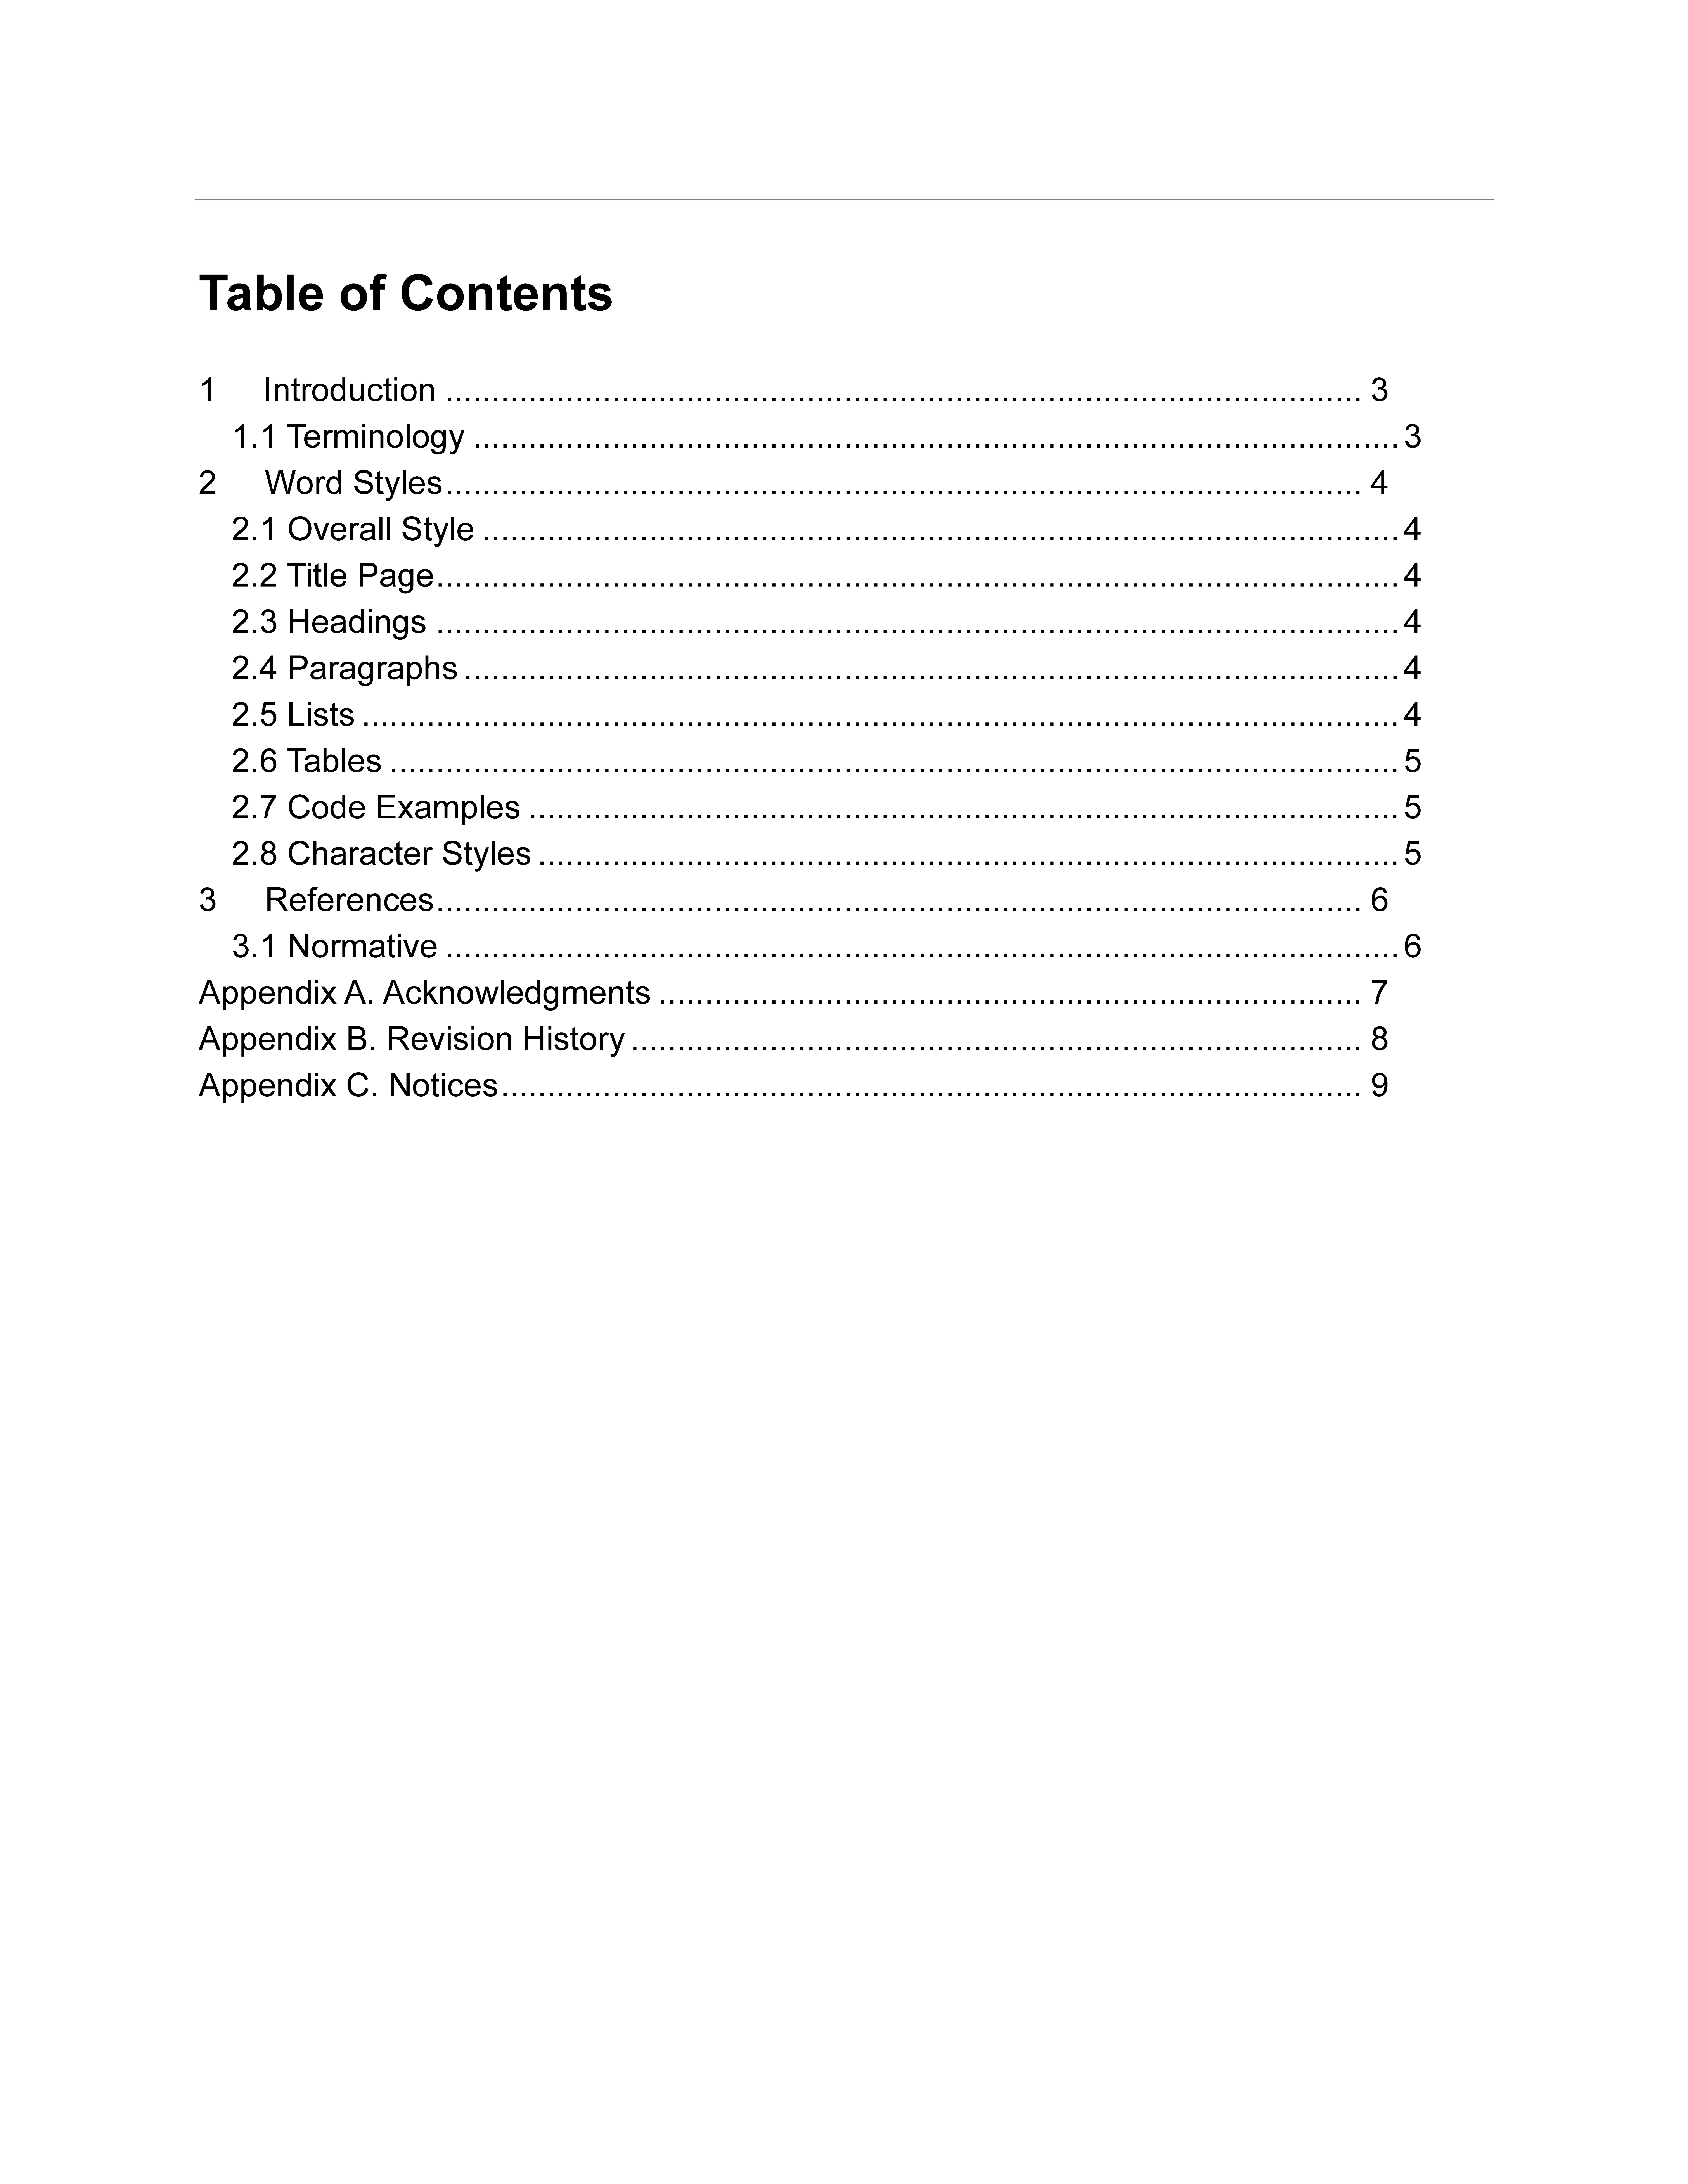 table of contents sample plantilla imagen principal